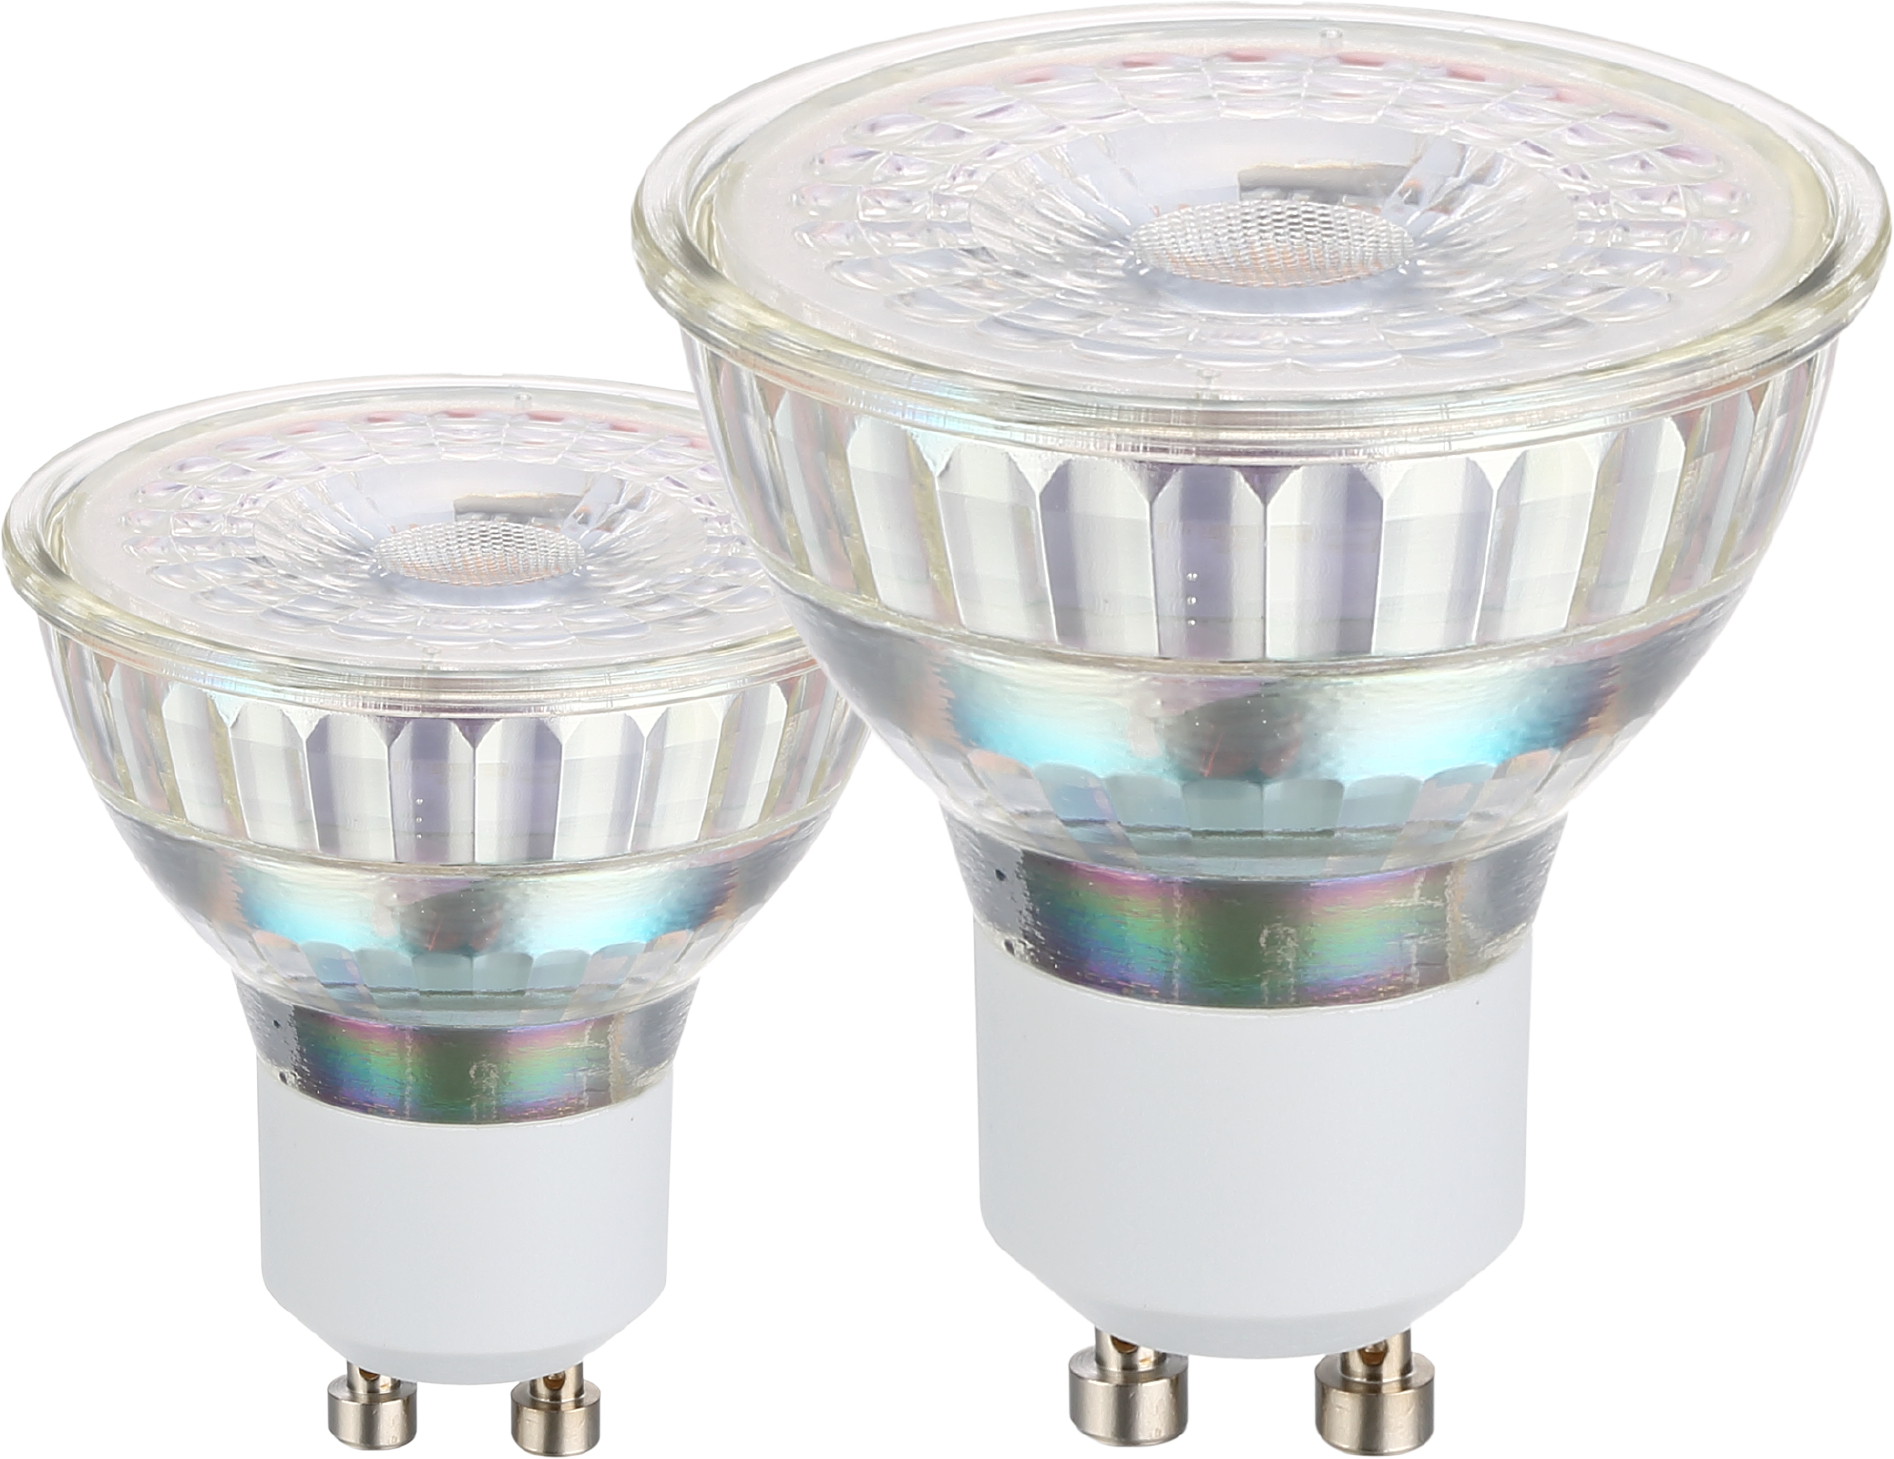 EGLO Ampoule LED GU10 110148 345 lumen, 4.5W 2 pcs. 345 lumen, 4.5W 2 pcs.